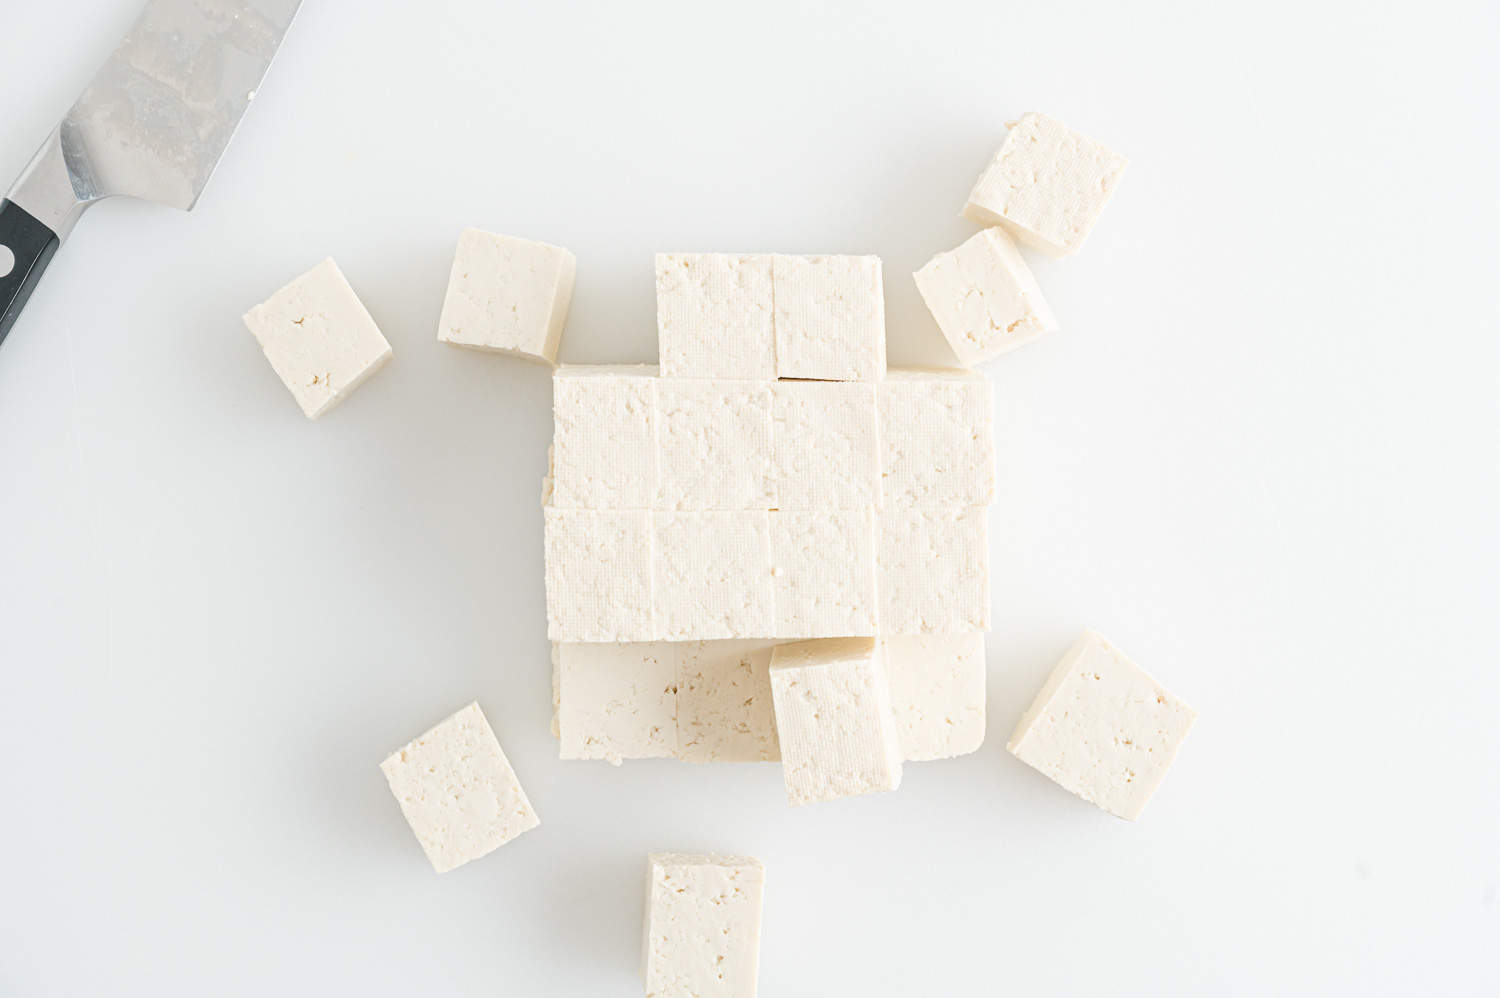 Tofu, cut into cubes.